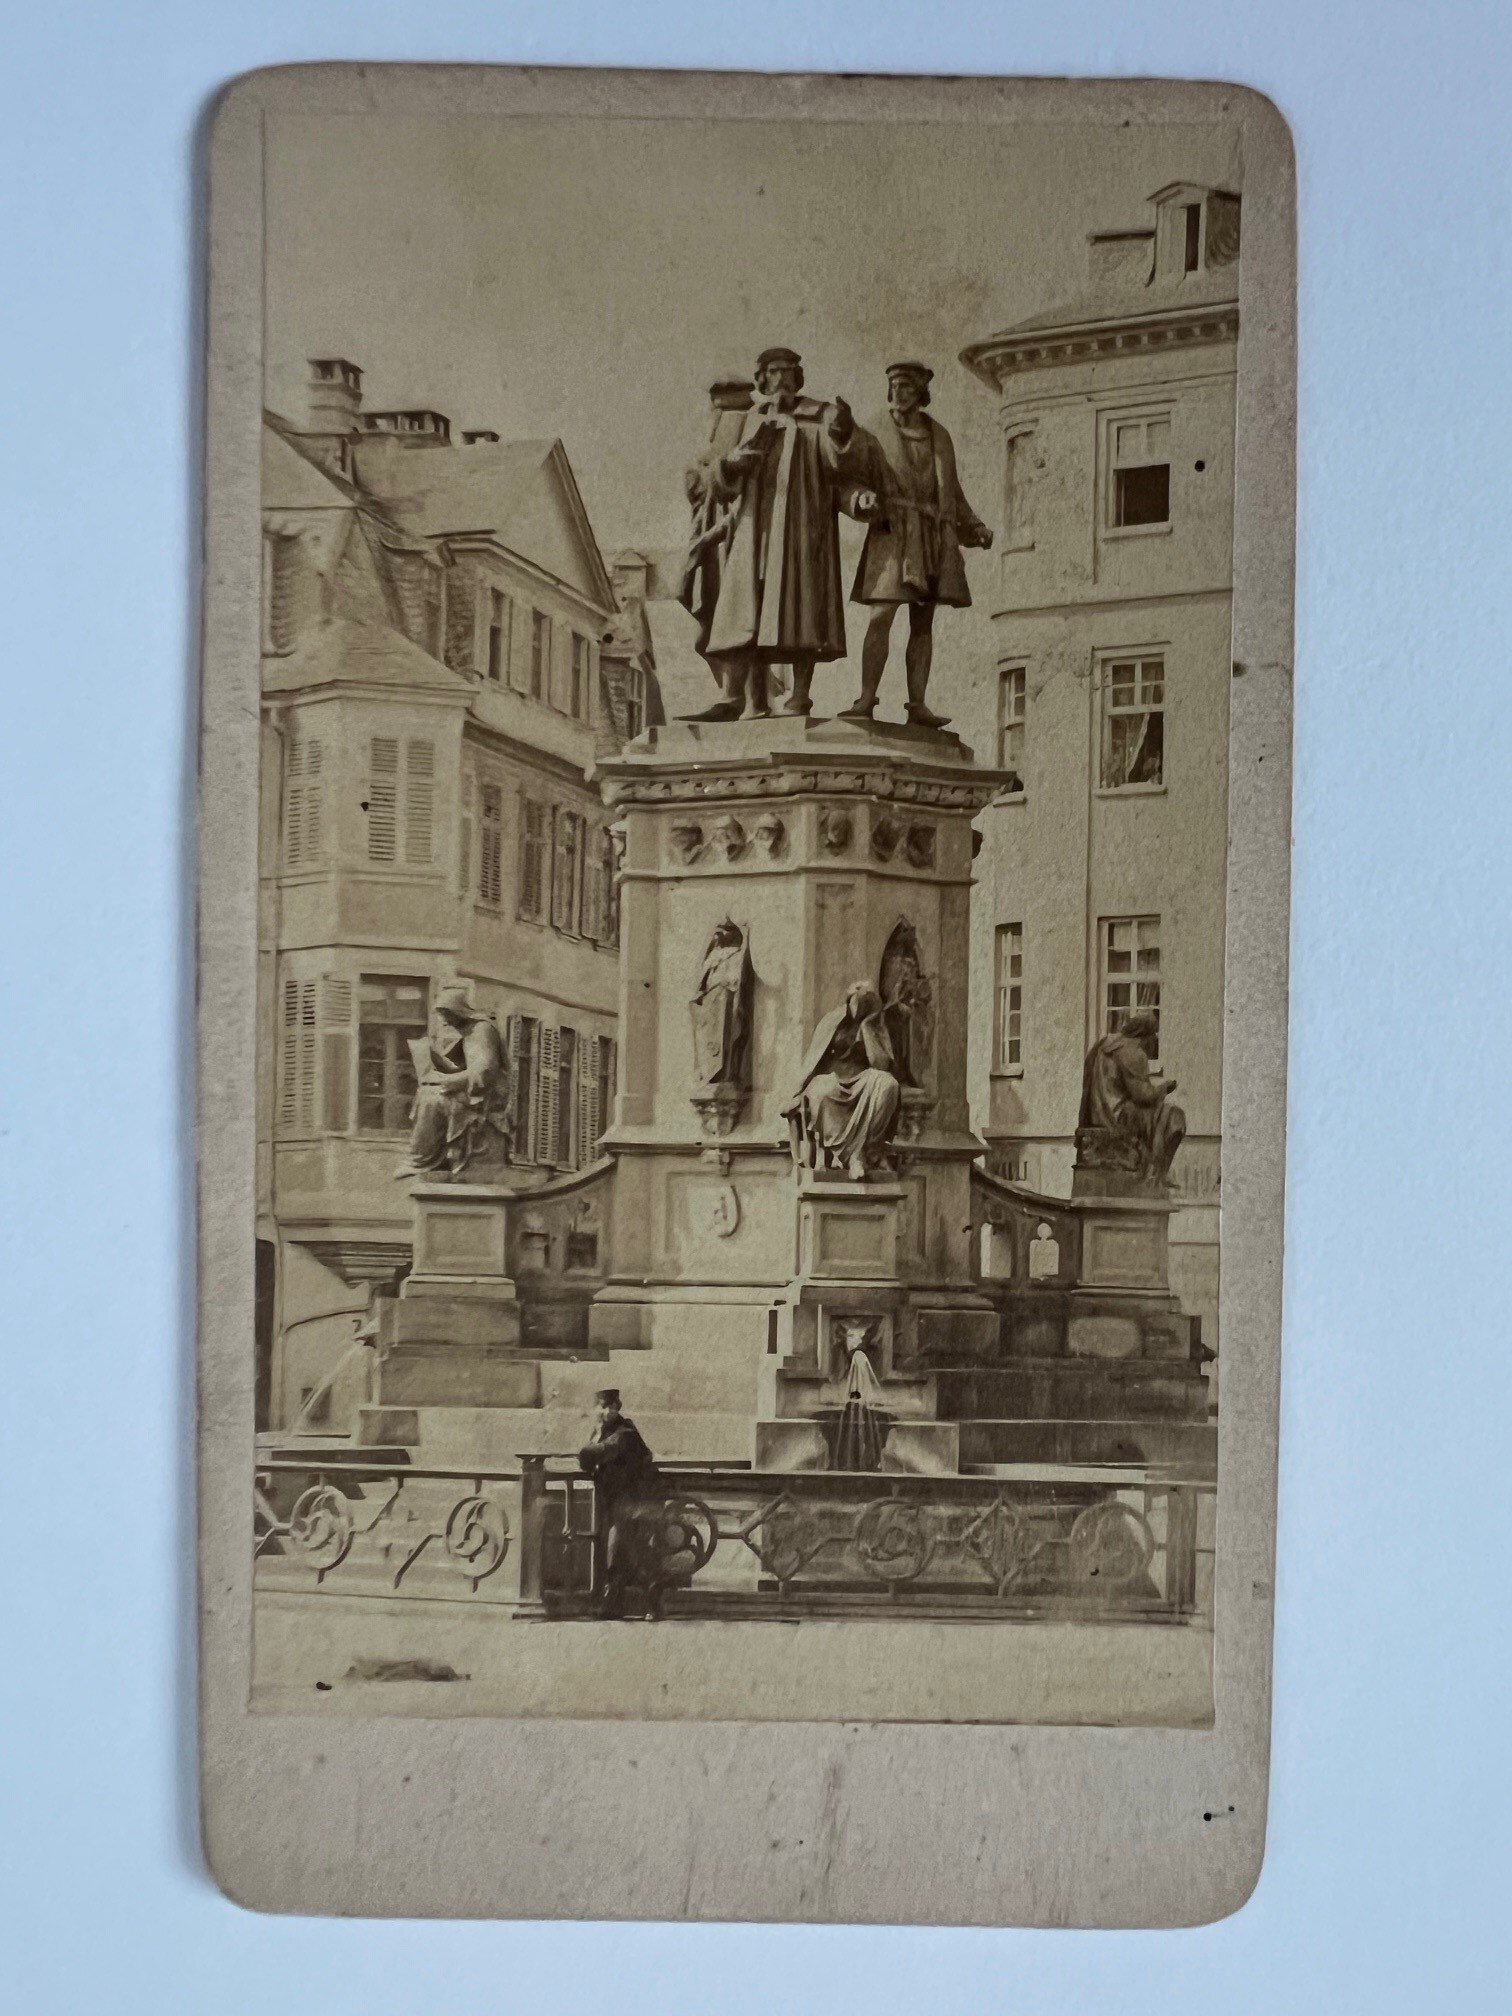 CdV, Straub und Kühn, Frankfurt, Das Guttenberg-Denkmal, ca. 1880. (Taunus-Rhein-Main - Regionalgeschichtliche Sammlung Dr. Stefan Naas CC BY-NC-SA)